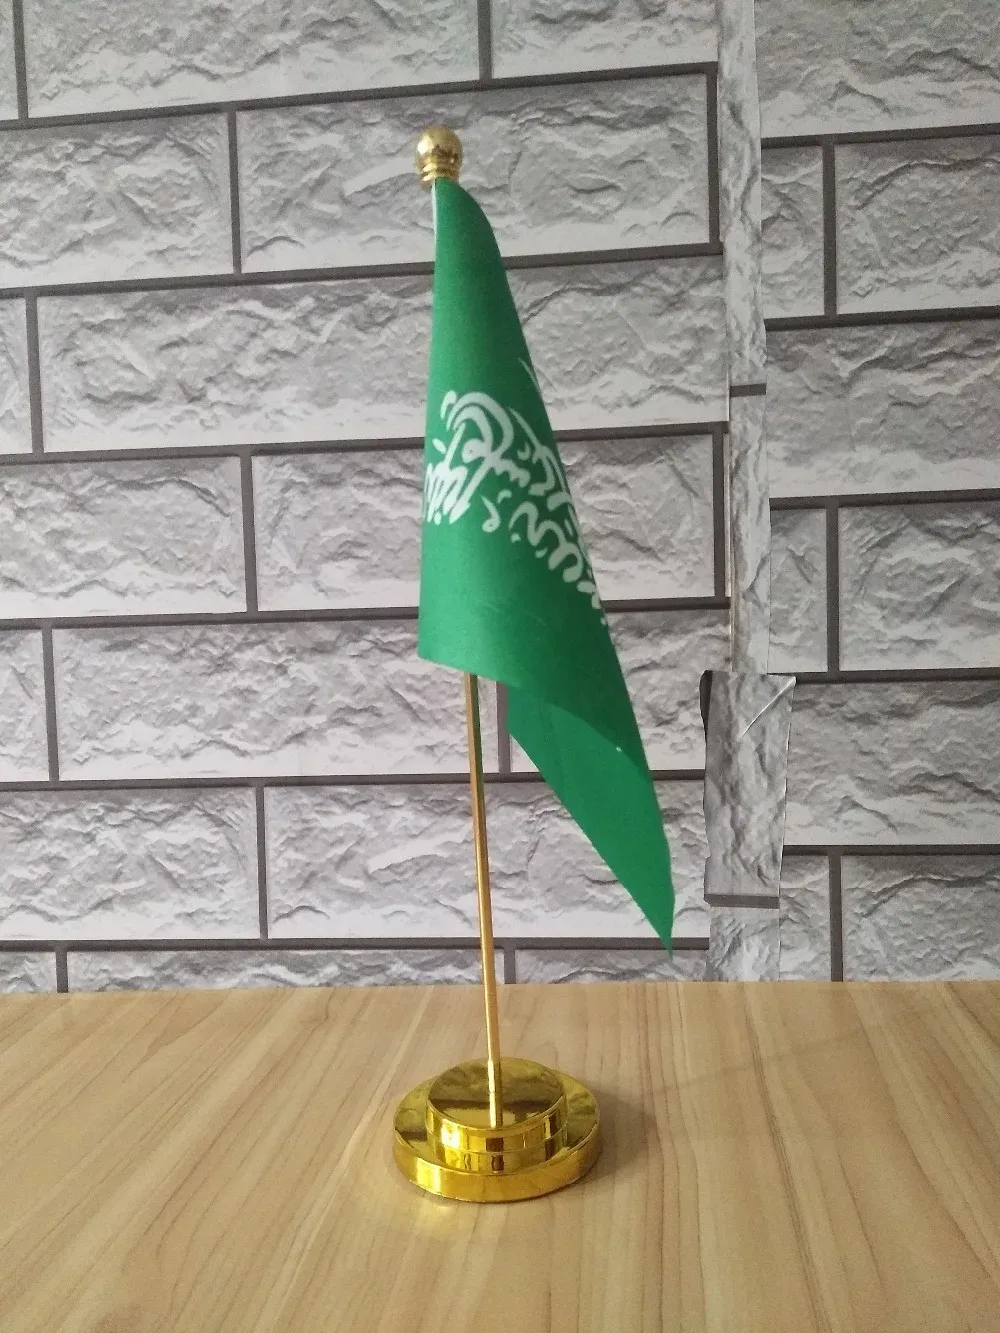 ملحقات مكتب طاولة المكاتب السعودية مع قاعدة الذهب أو الفضة المعدنية الأسرة 14*21 سم العلم مجاني الشحن رقم 0052